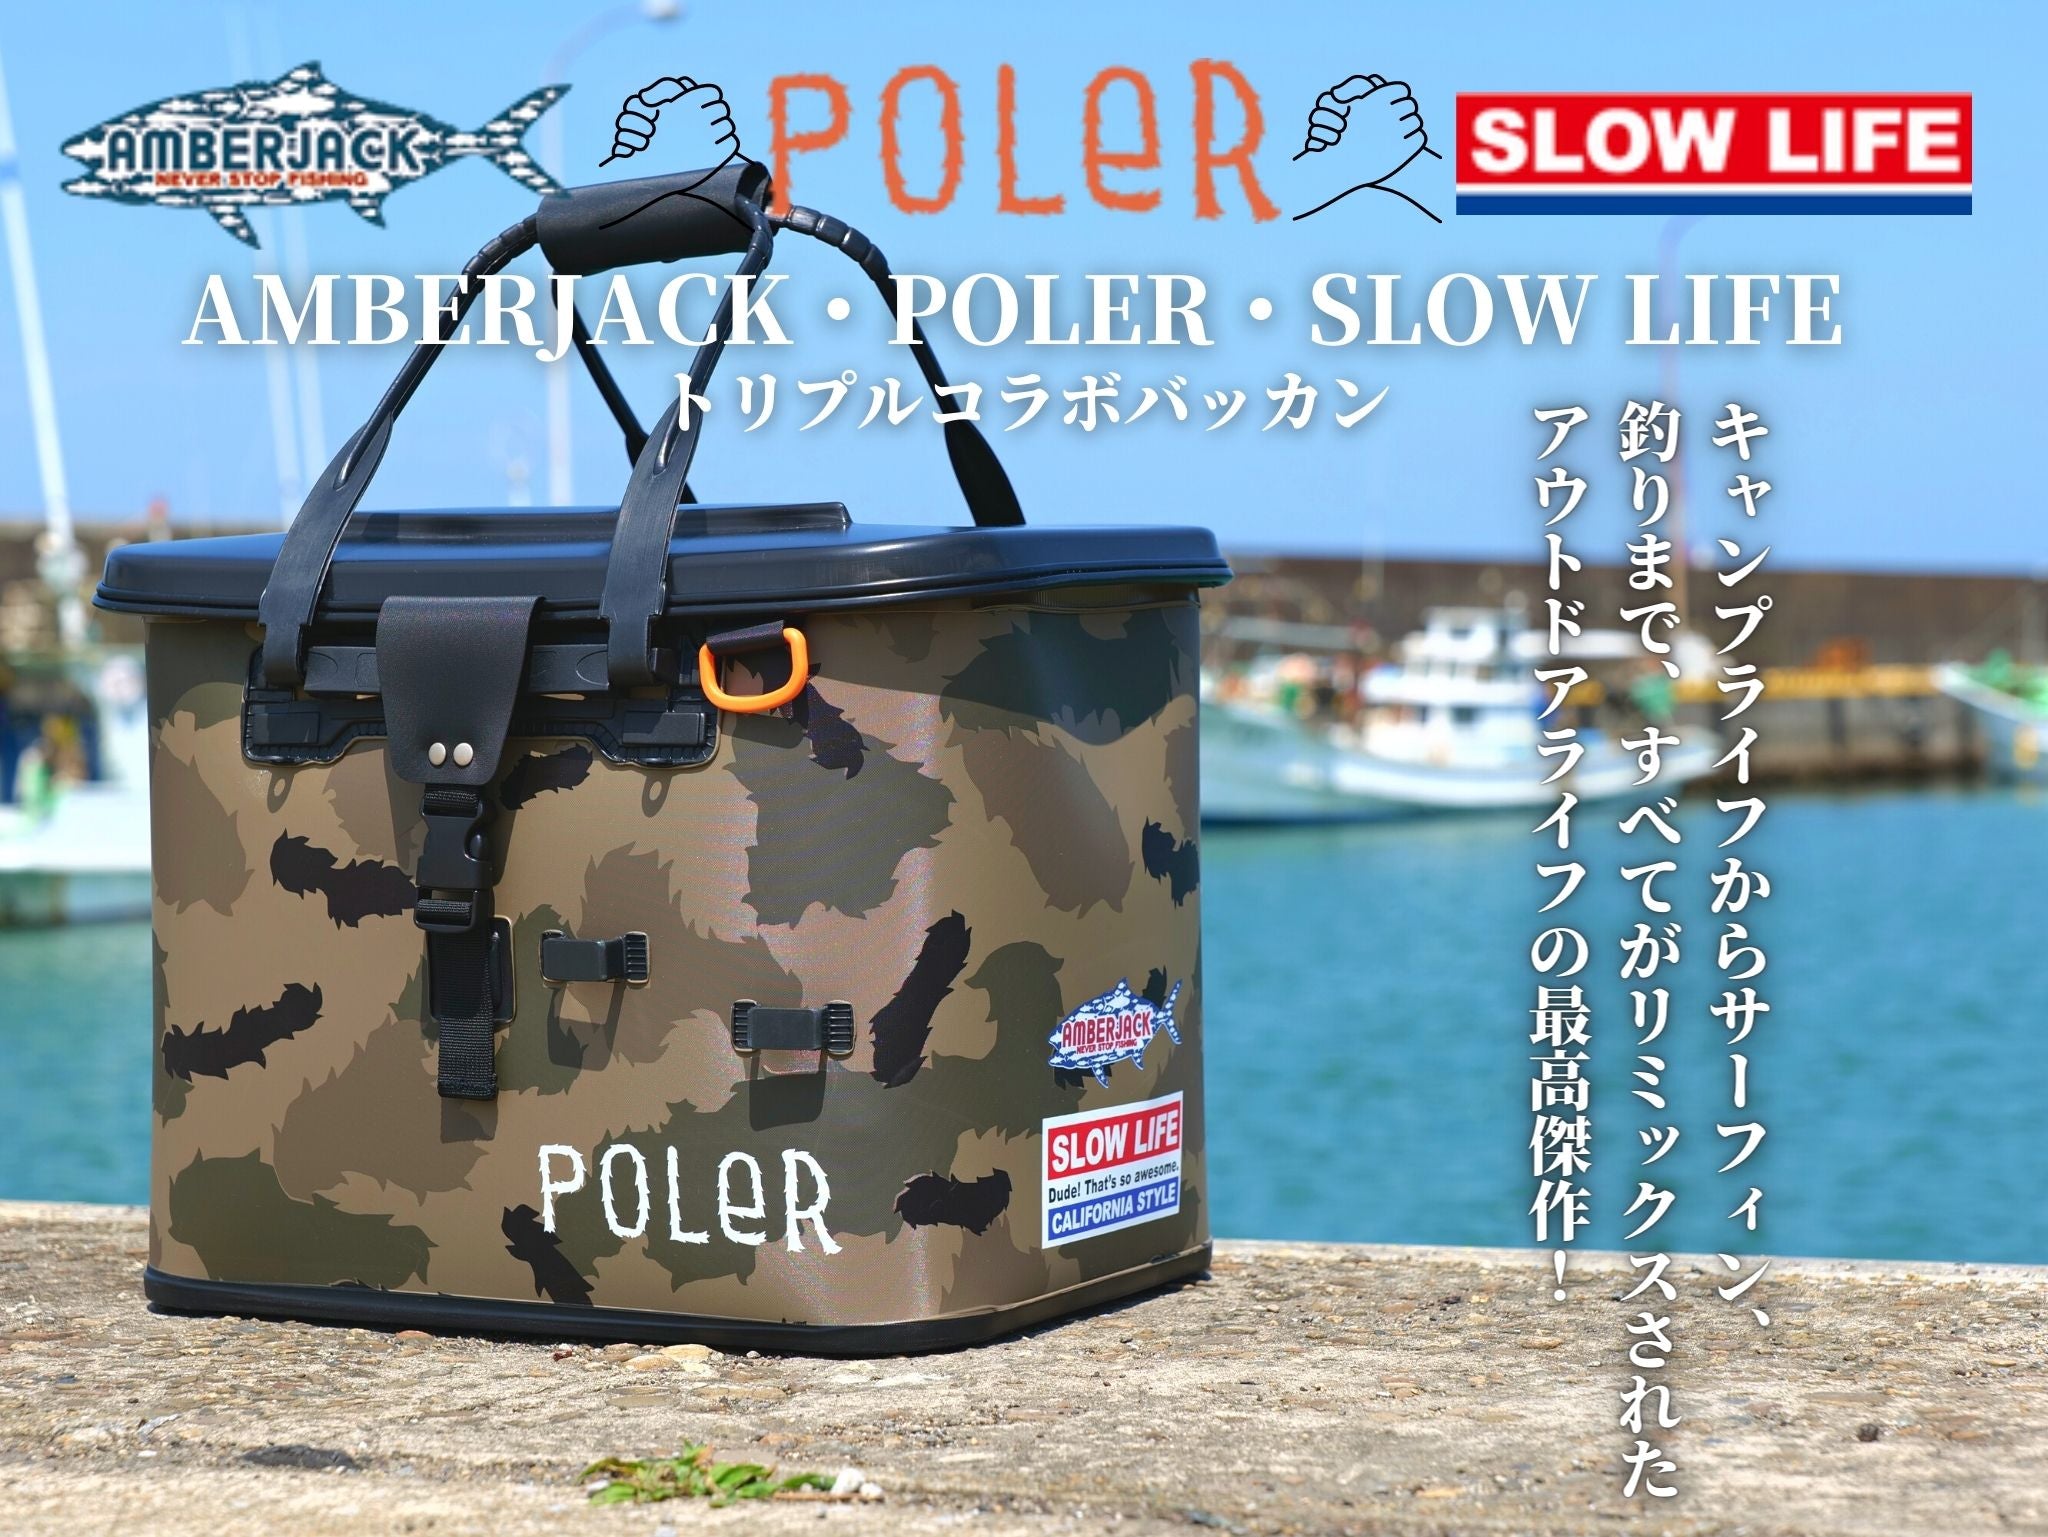 POLER・SLOW LIFE・AMBERJACK トリプルコラボ バッカン | 宮崎市の釣具